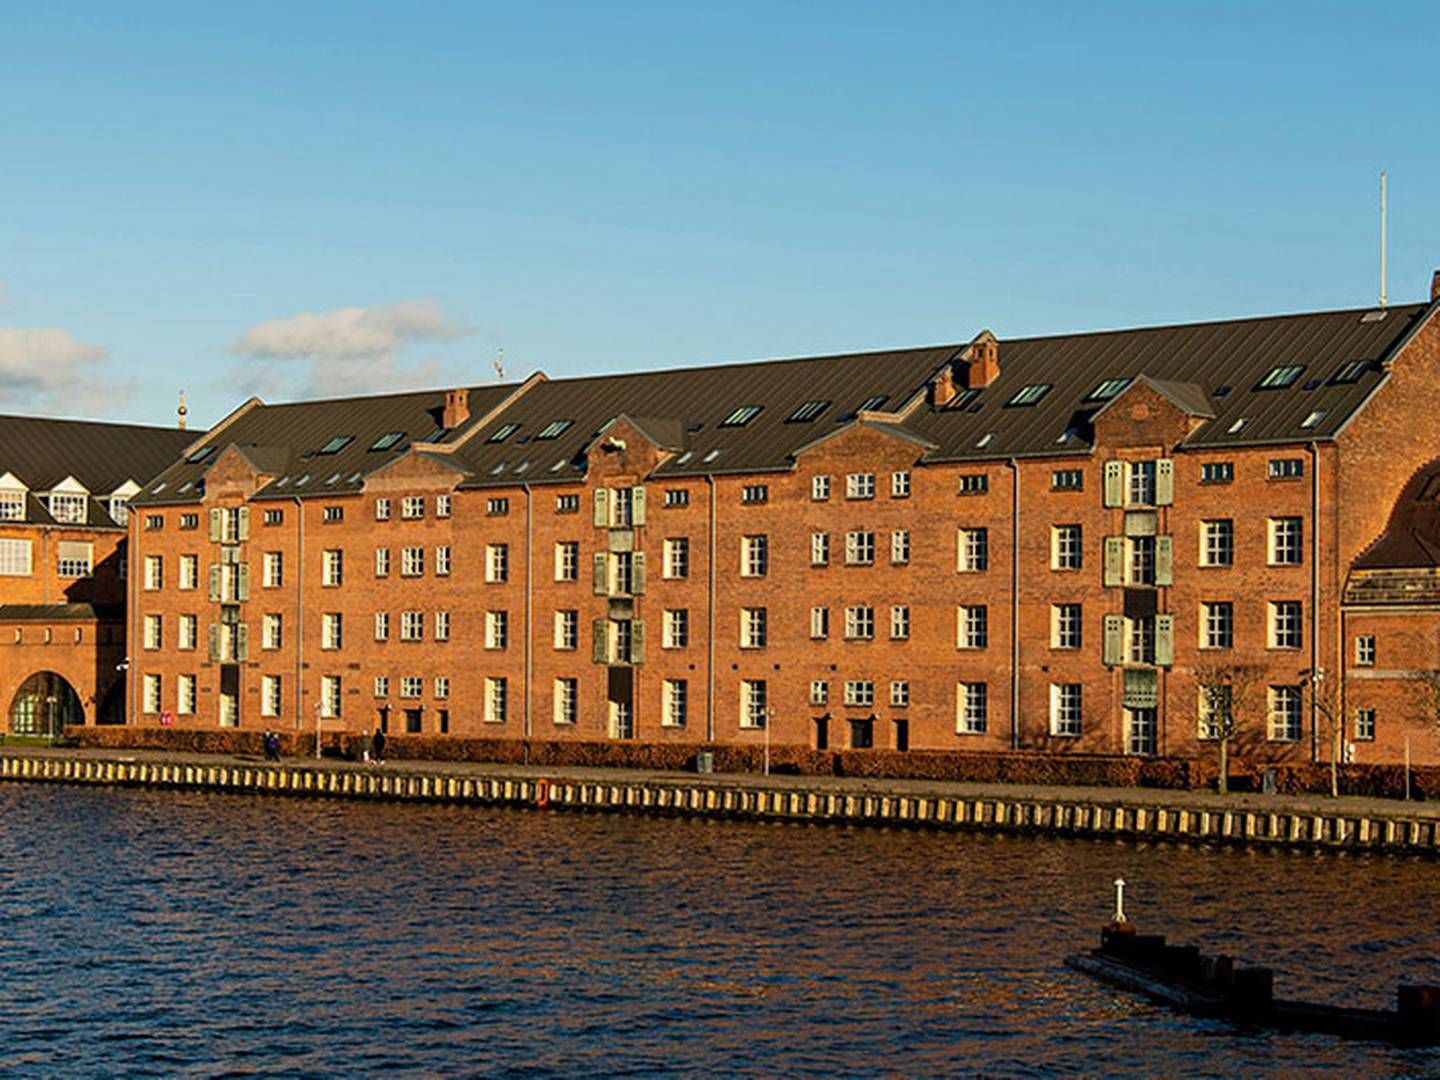 C.W. Obel Ejendomme overtog for ti år siden de mere end 100 år gamle pakhusbygninger på Langebrogade ud til Københavns Havn, der i sin tid blev anvendt af De Danske Sukkerfabrikker. | Foto: PR / C.W. Obel